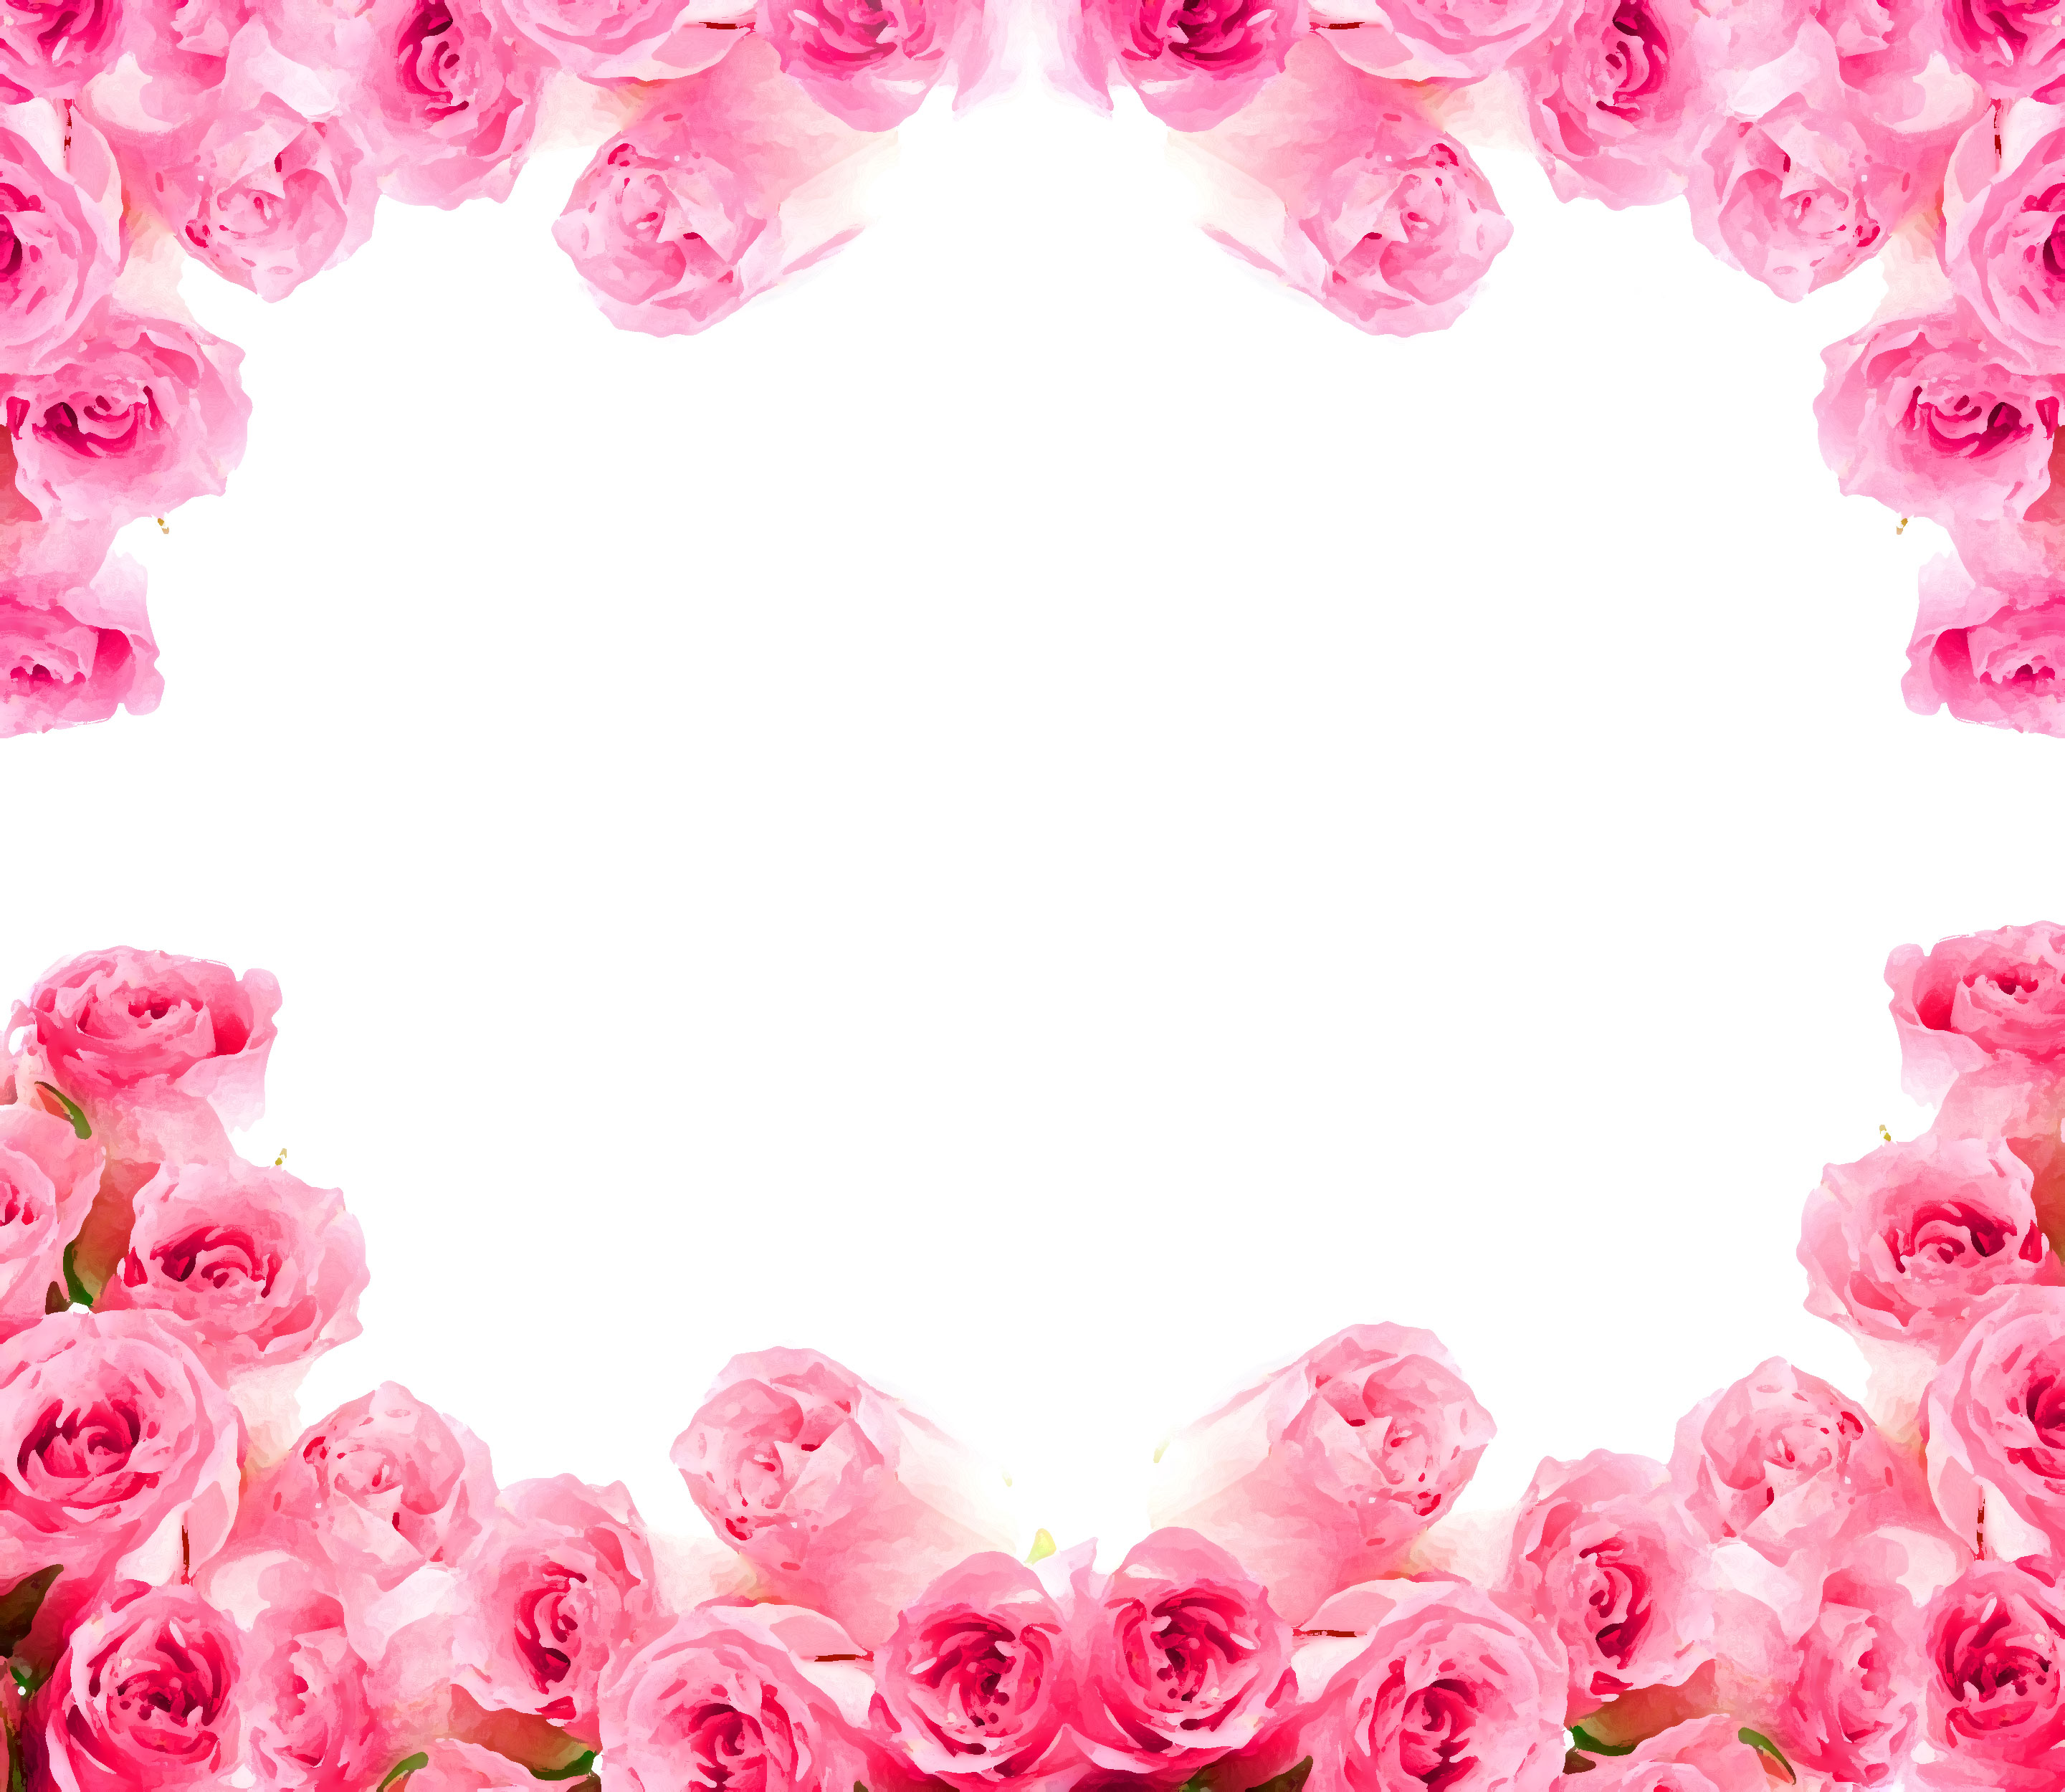 バラの画像 イラスト 壁紙 背景用 No 645 花囲い ピンク バラ